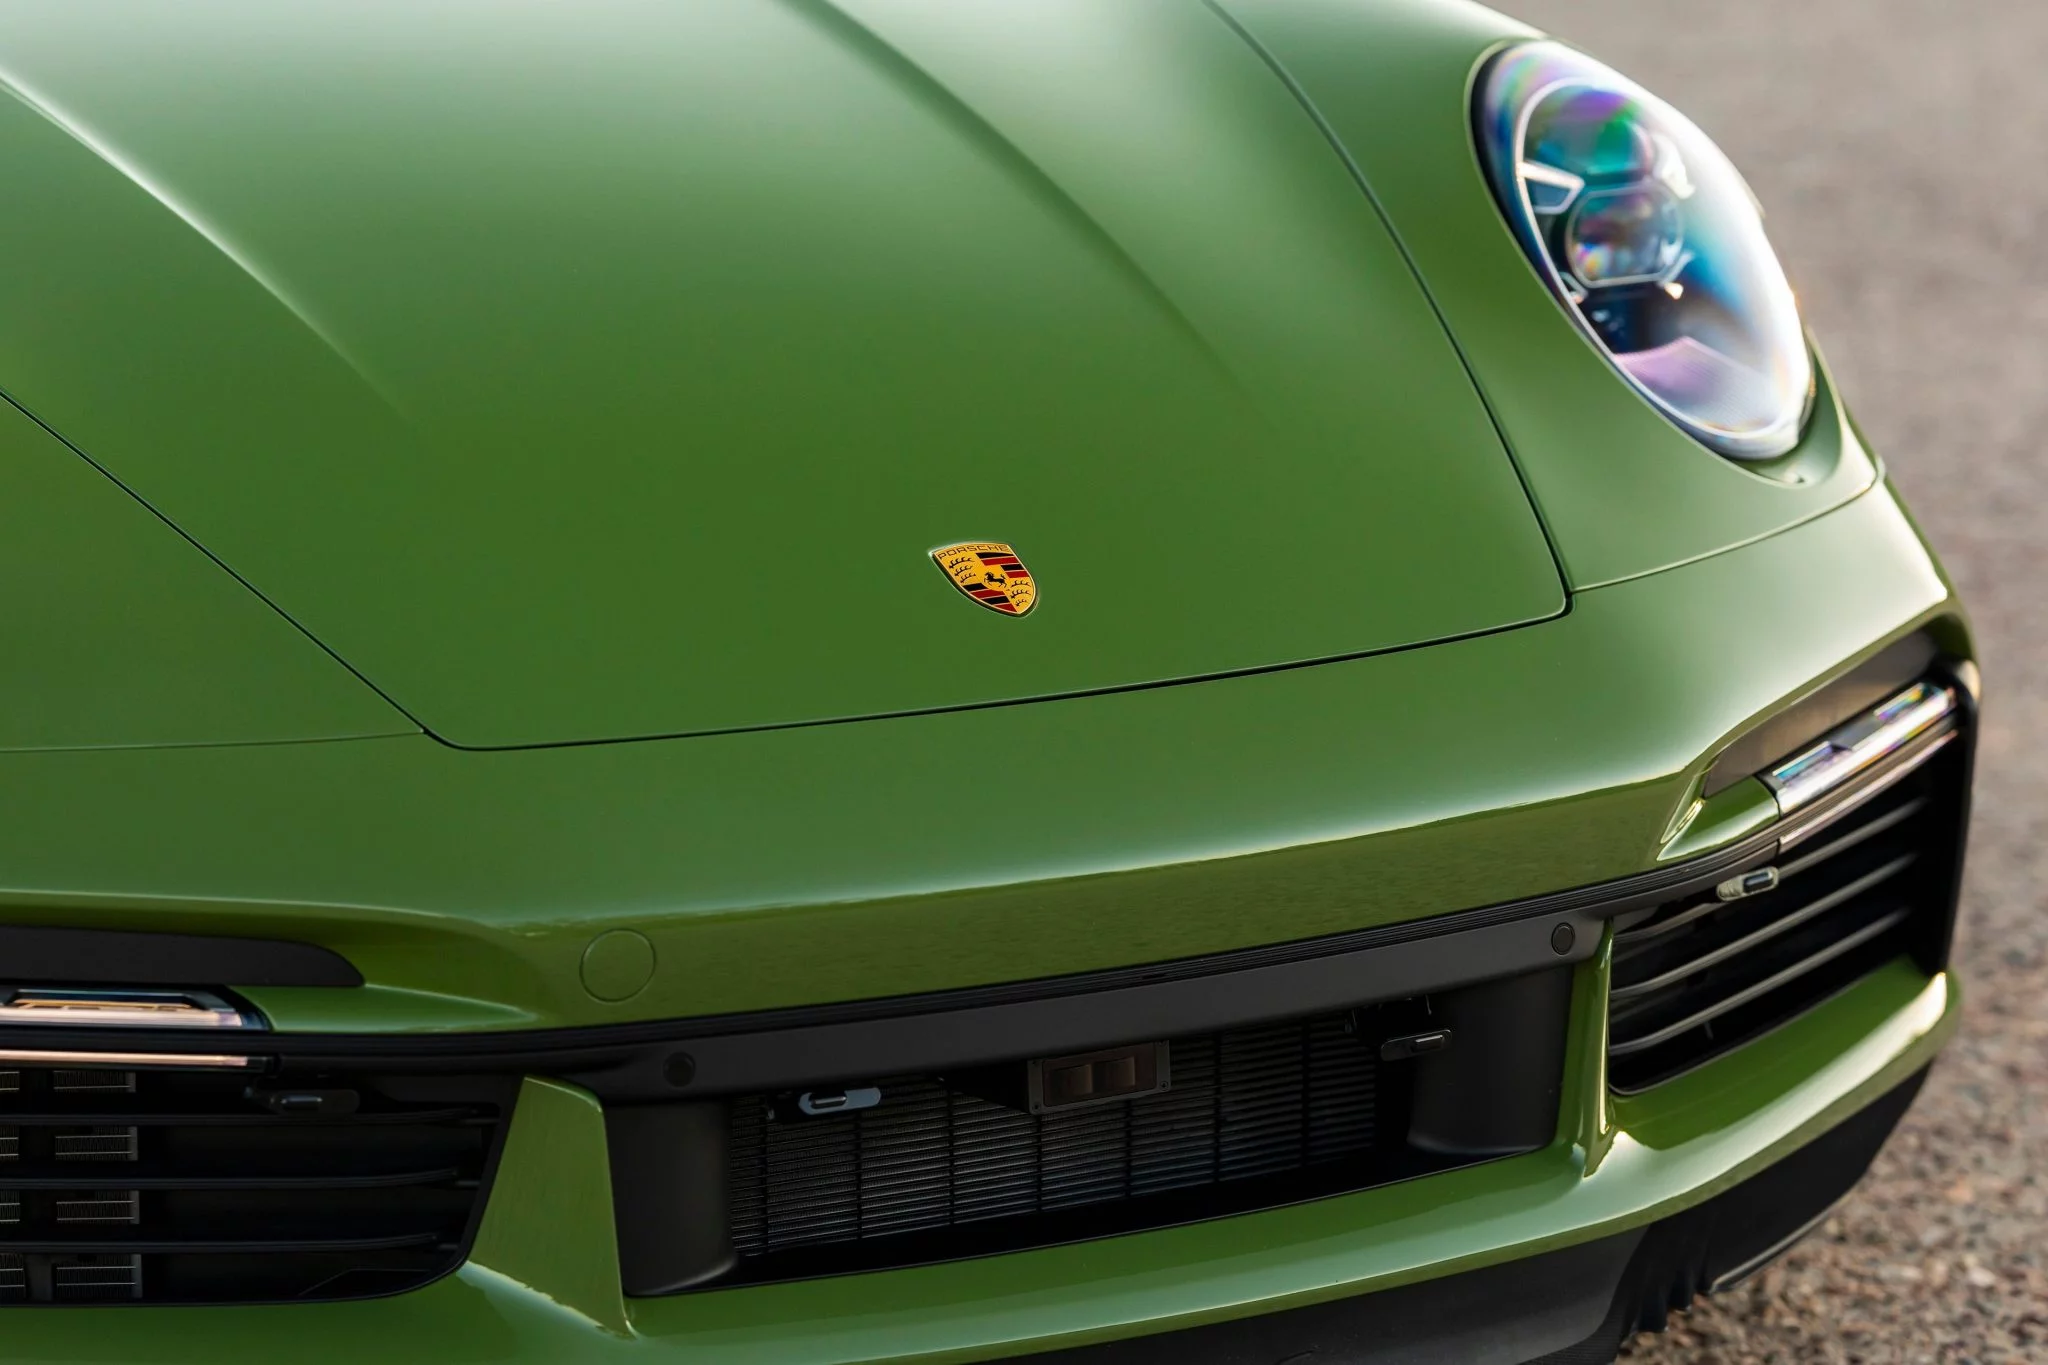 Olive Green Porsche 911 Turbo